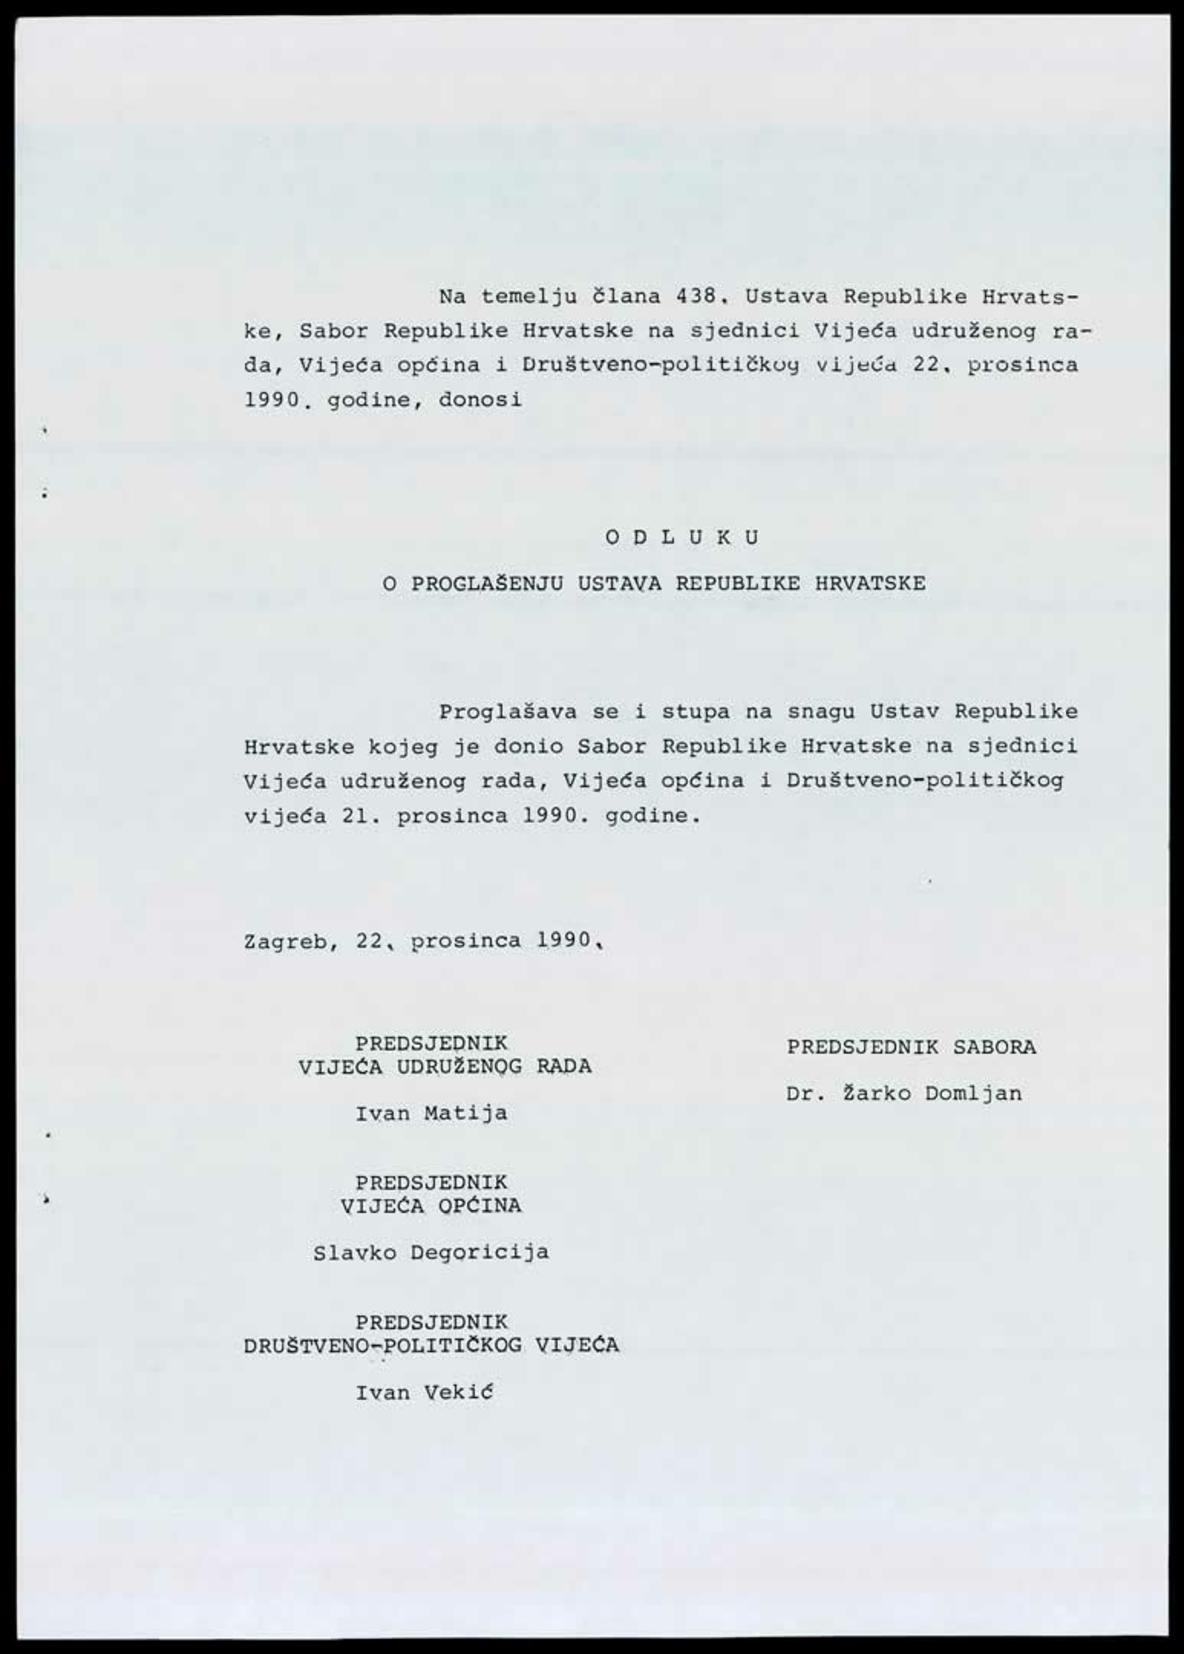 <b>Odluka o proglašenju Ustava Republike Hrvatske</b>, 22. prosinca 1990.<br><br>
HR-HDA-1741. Ured predsjednika RH Franje Tuđmana. Pismohrana, fasc. 60
